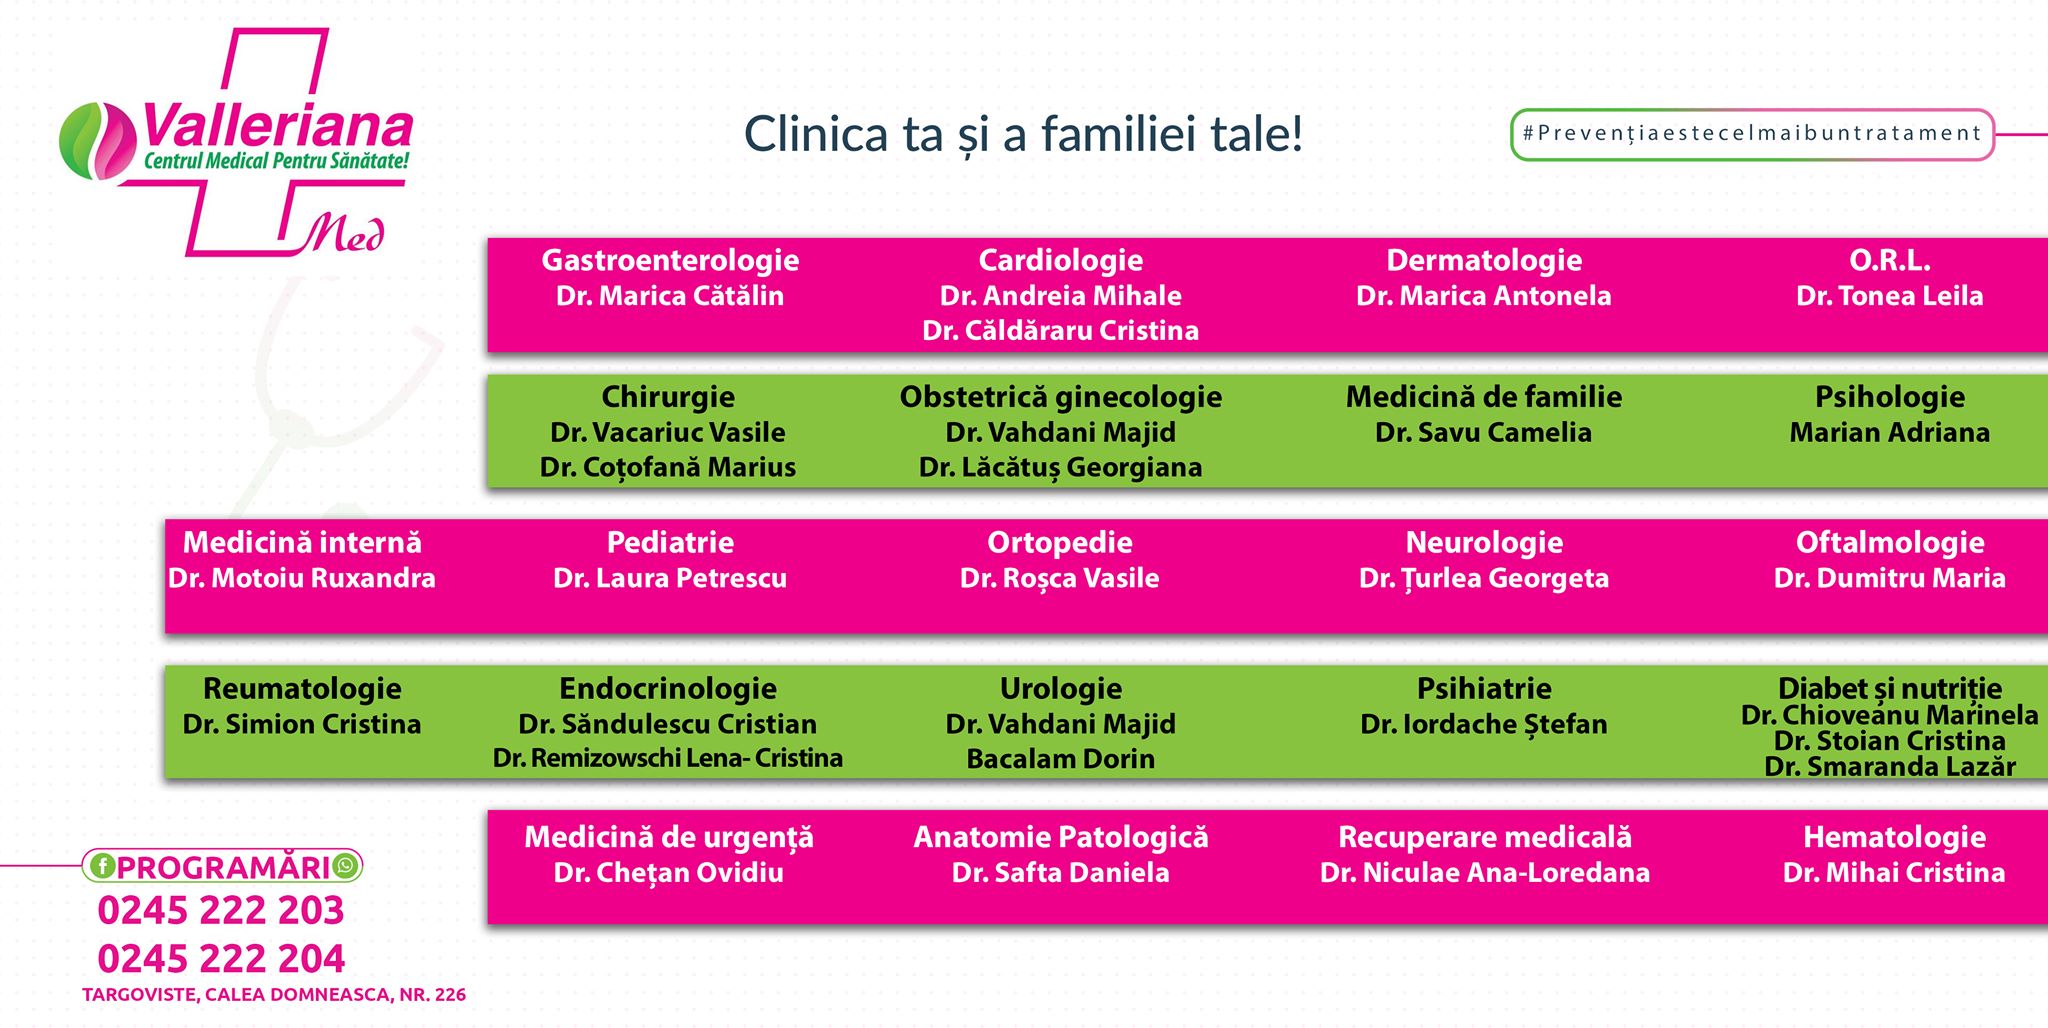 Doctorul Cătălin Marica, la Clinica Valleriana, Clinica familiei tale!